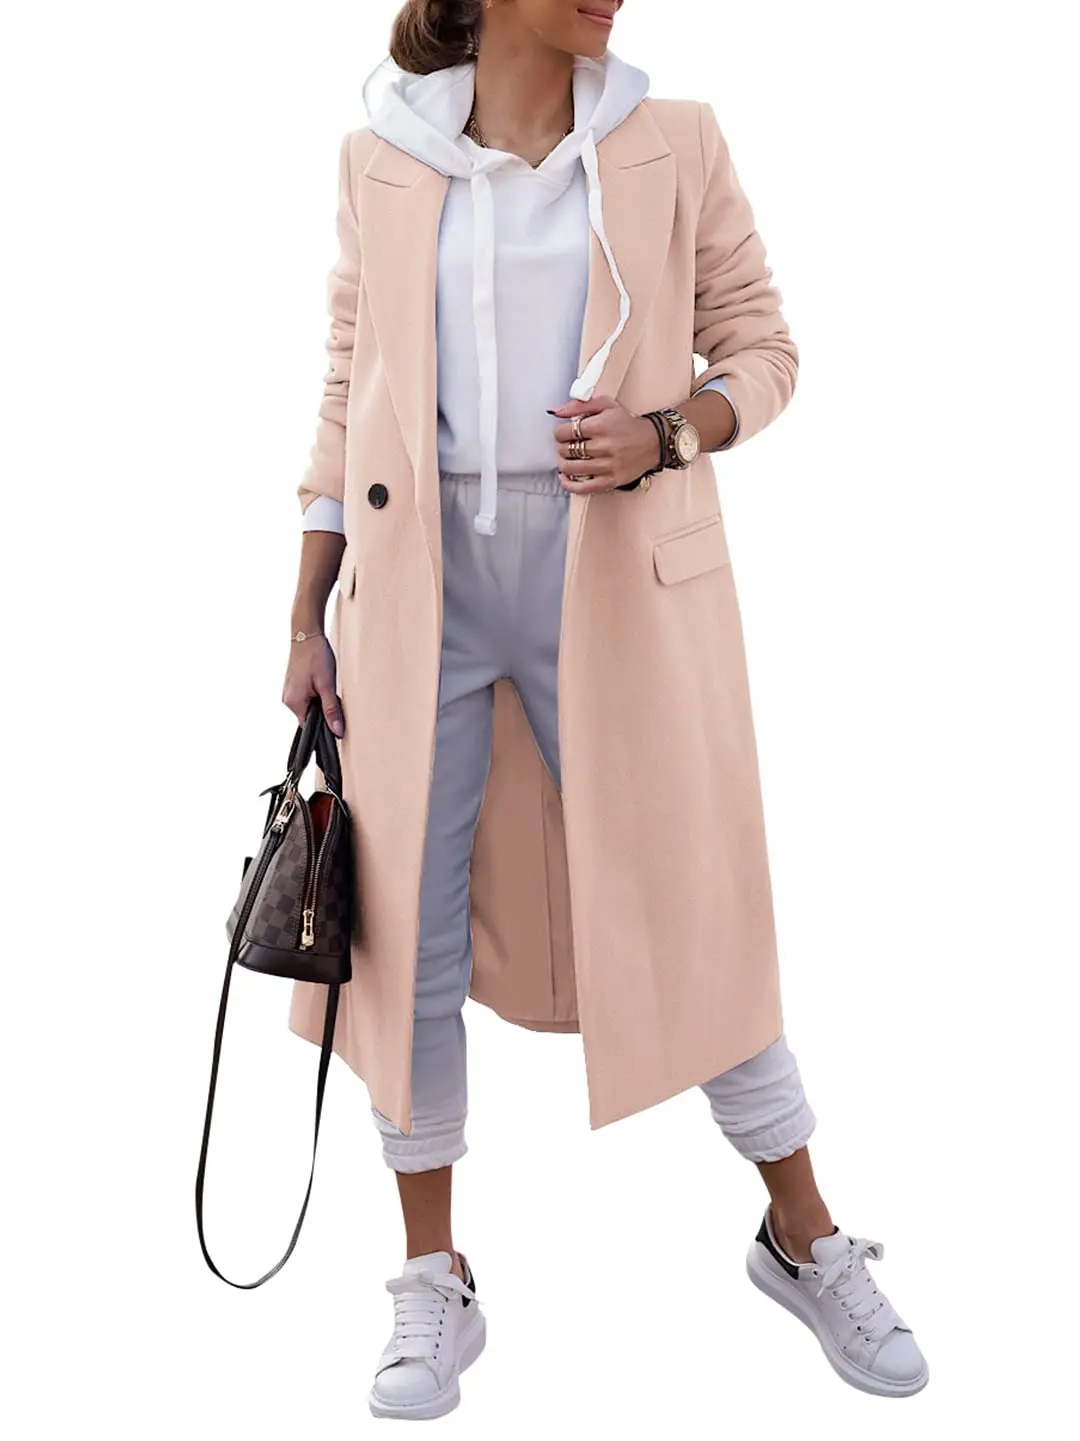 

Women's Double Breasted Pea Coat Lapel Wool Blend Long Trench Jacket Winter Elegant Overcoat Outwear